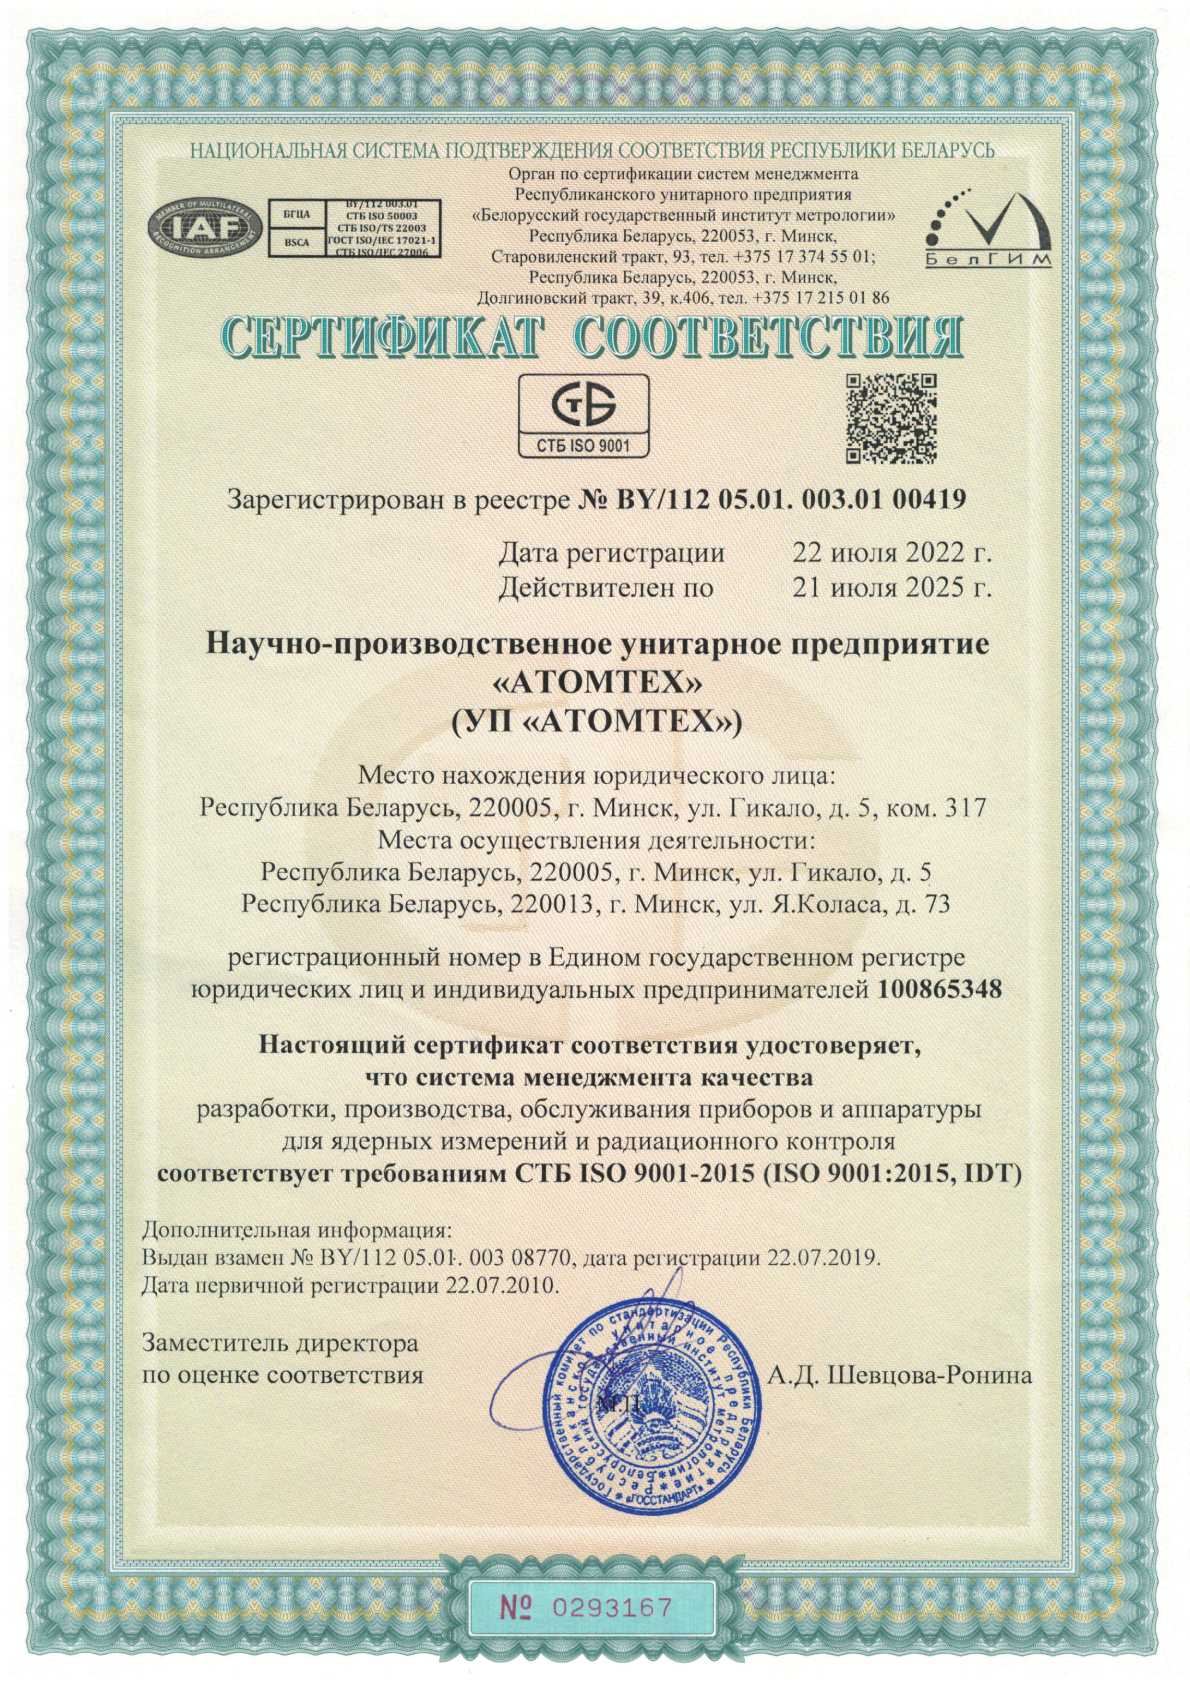 Смк химки. Товарный знак Атомтех. Высокие стандарты качества Солнечногорск. Atomtex 15176 год 2012 Белоруссия.